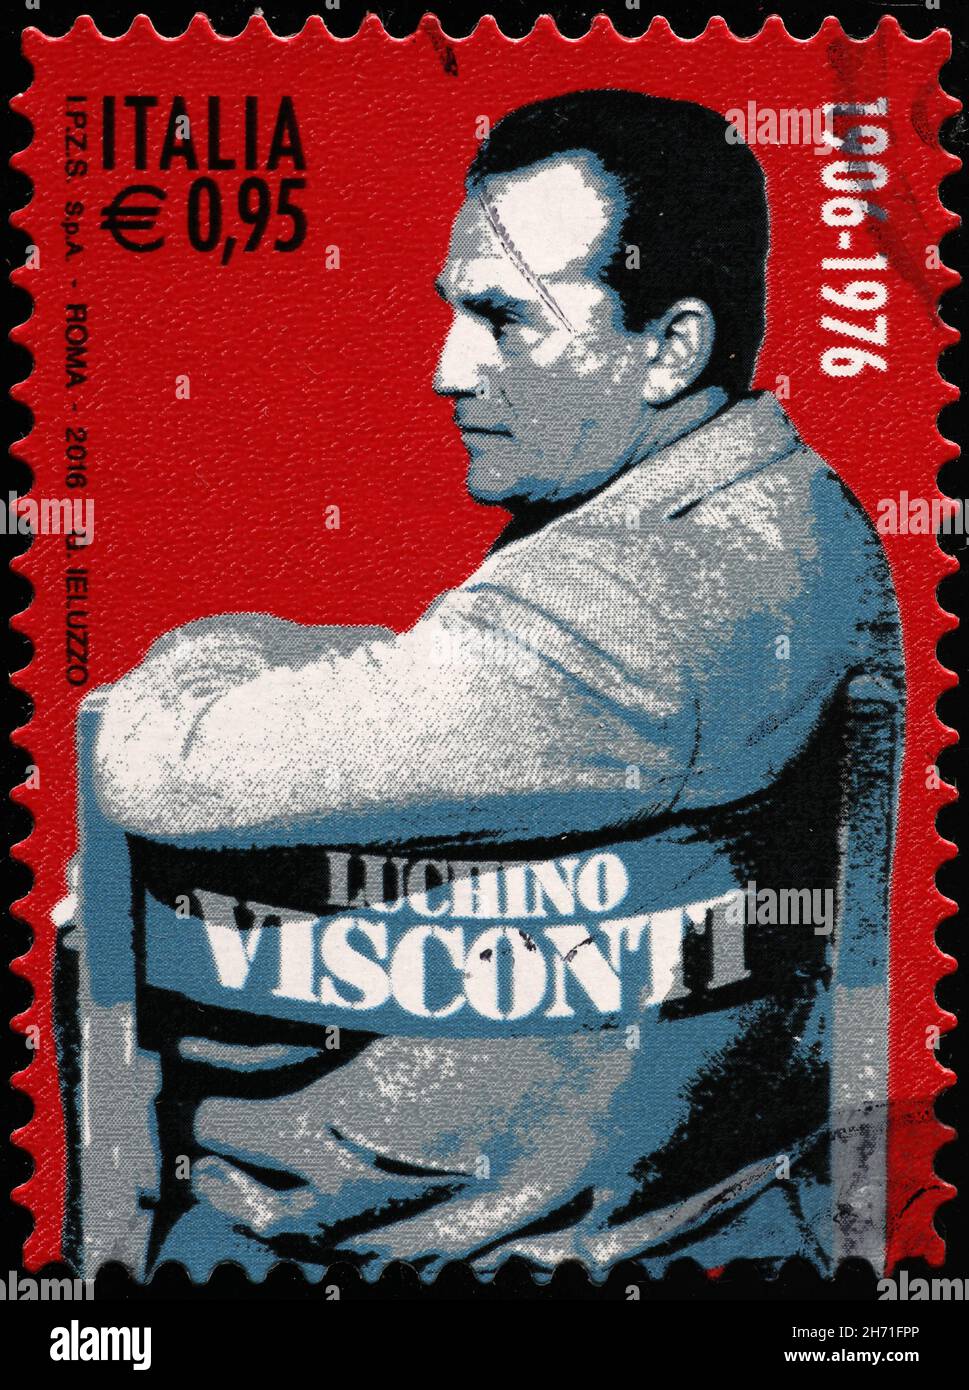 Célèbre réalisateur Luchino Viaconti sur timbre-poste italien Banque D'Images